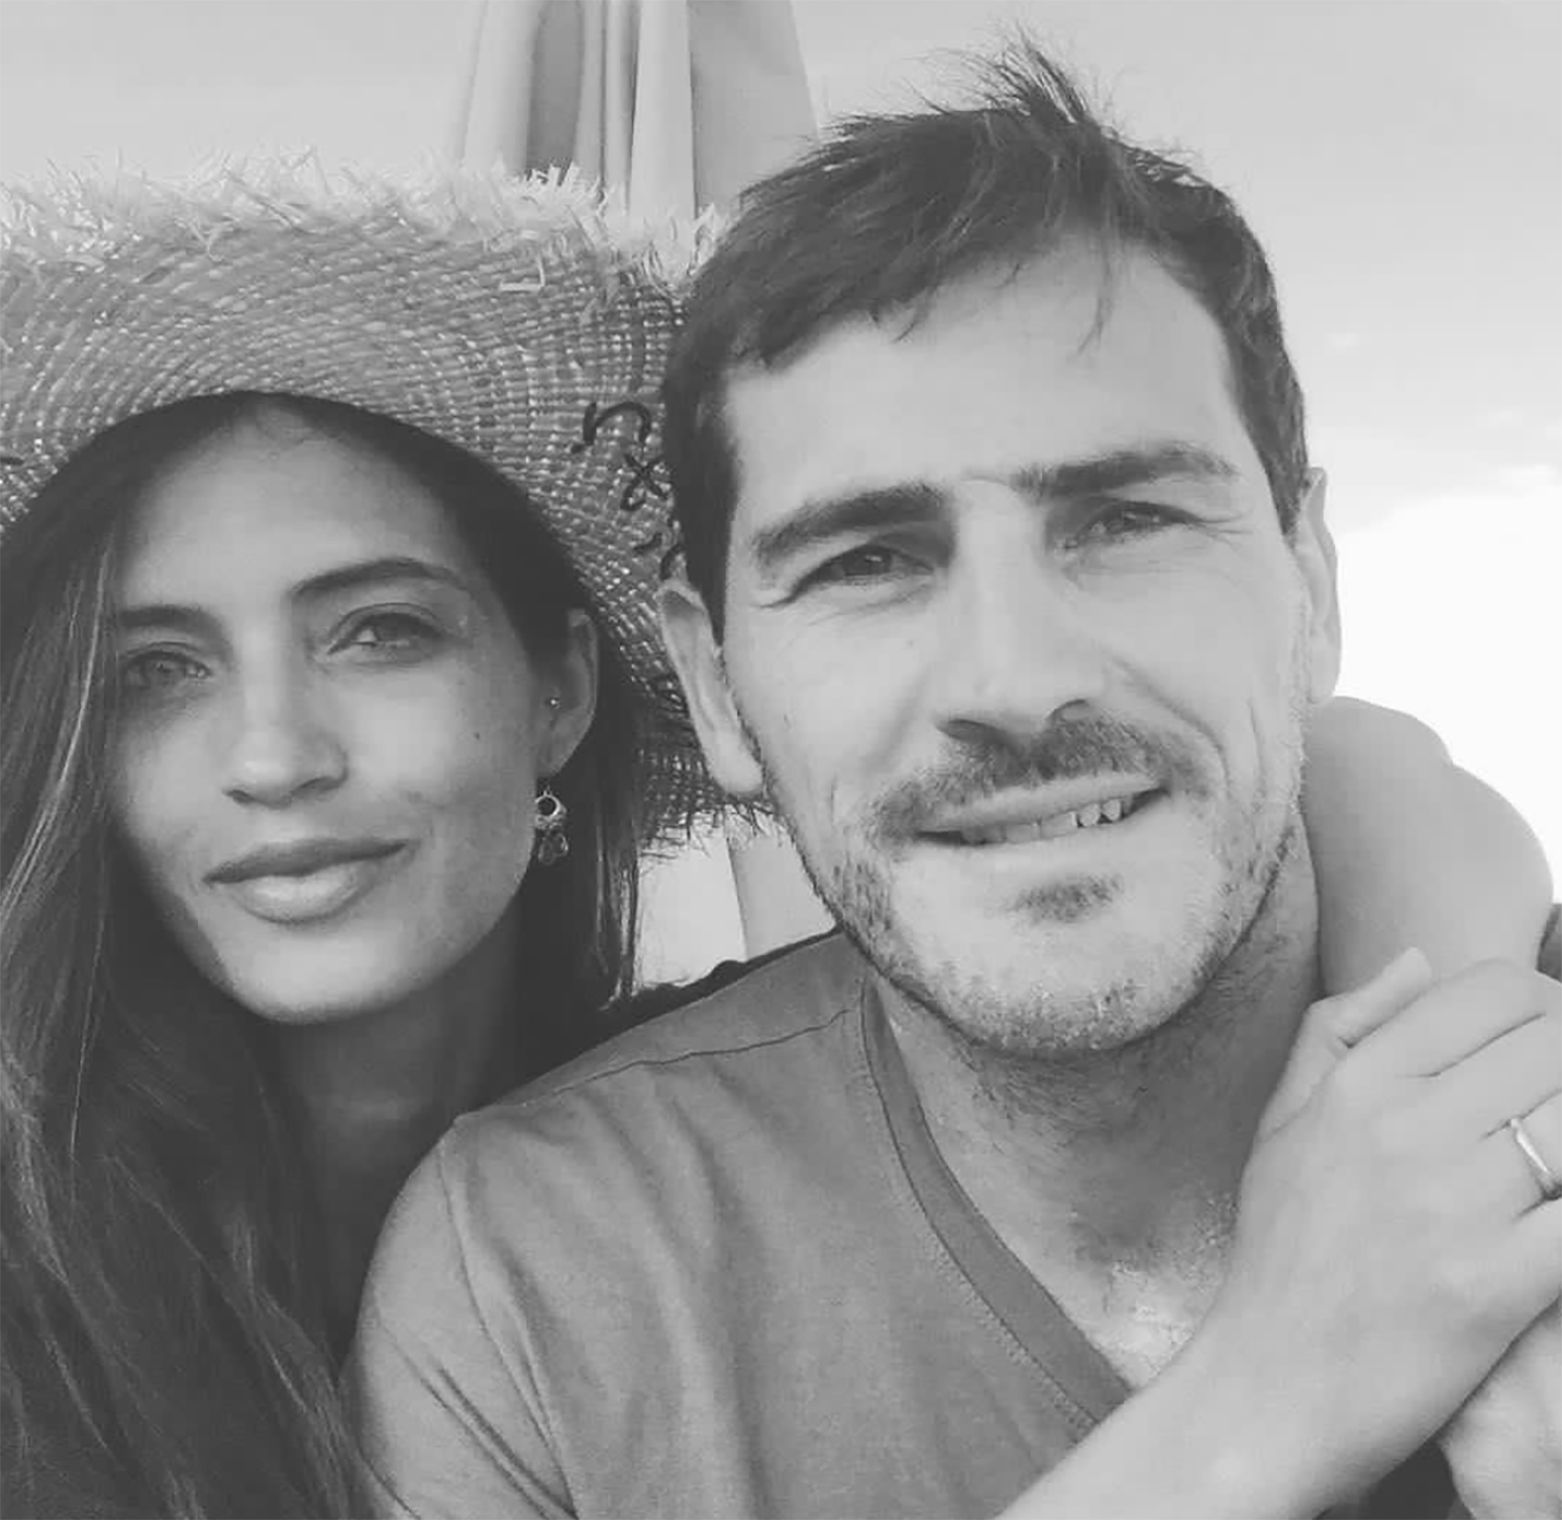 Sara Carbonero e Iker Casillas confirman su separación